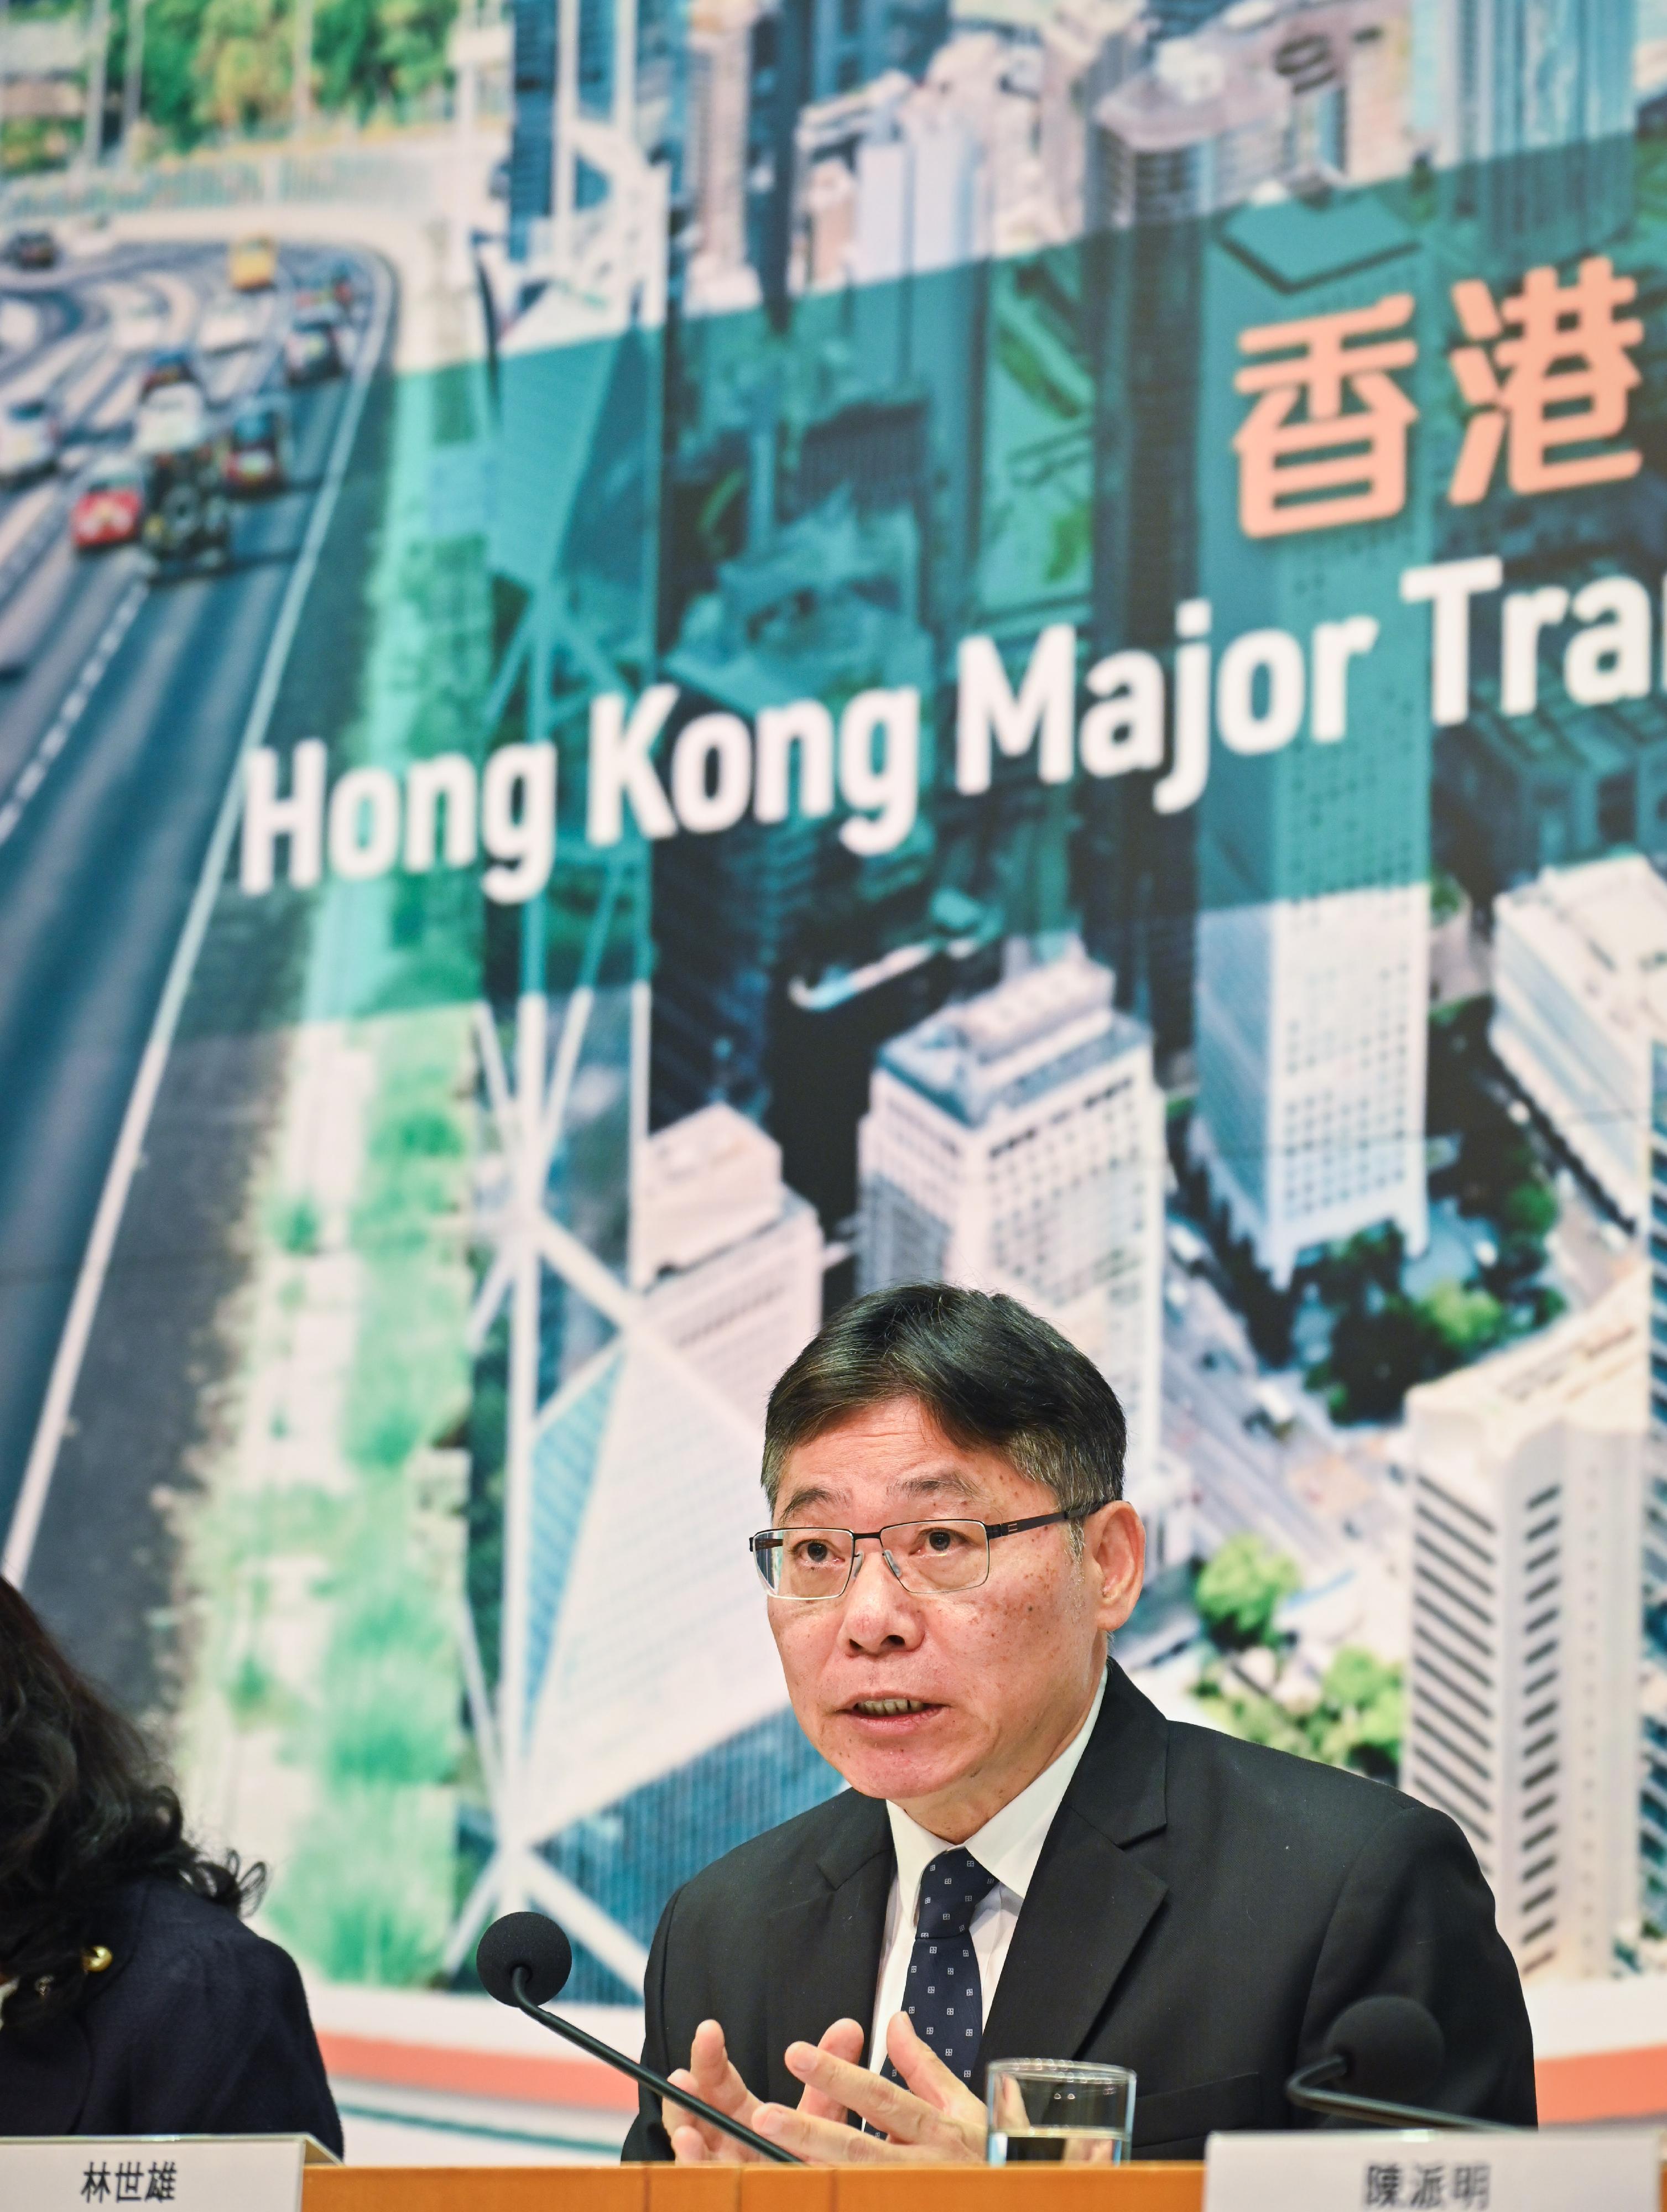 运输及物流局局长林世雄今日（十二月十二日）在《香港主要运输基建发展蓝图》记者会上讲解蓝图的愿景与目标。